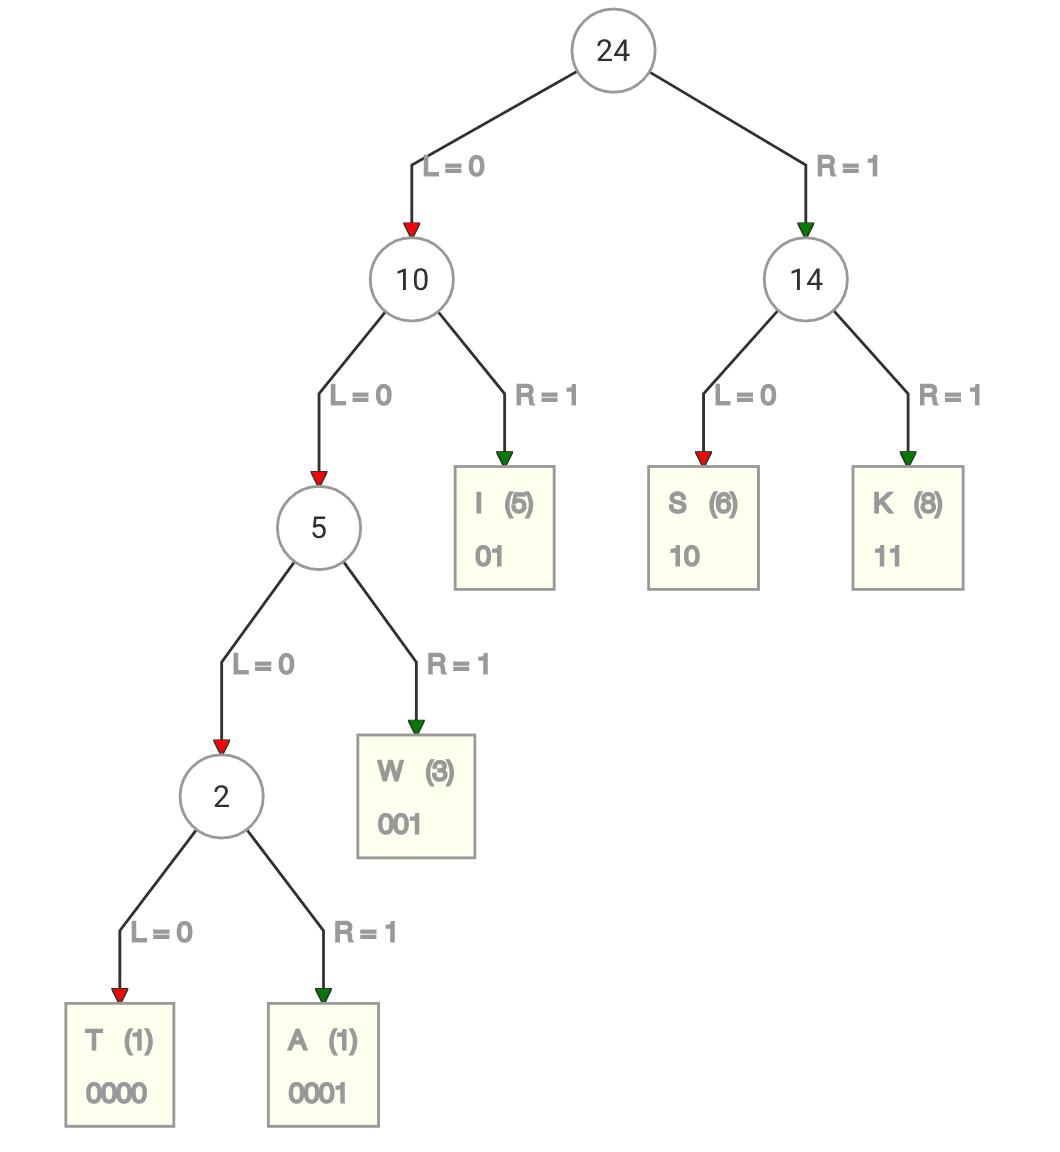 Drzewo binarne przedstawiające kody dla znaków po kodowaniu Huffmana. Kody są następujące: T - 0000, A - 0001, W - 001, I - 01, S - 10, K - 11.